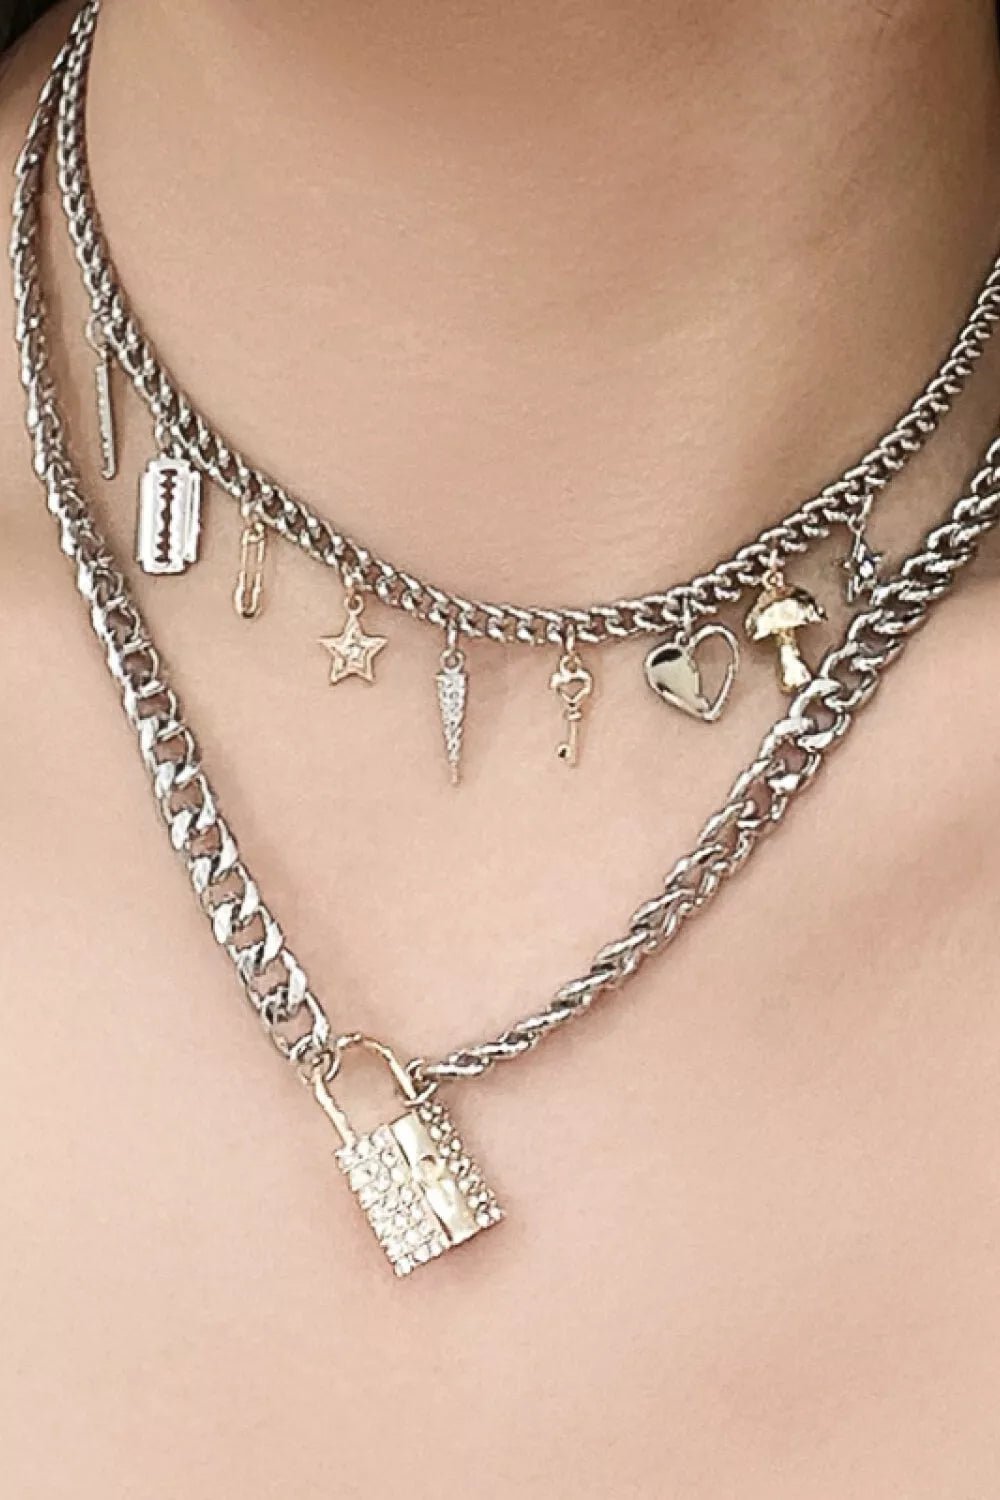 Lock Pendant Double-Layered Necklace - London's Closet Boutique